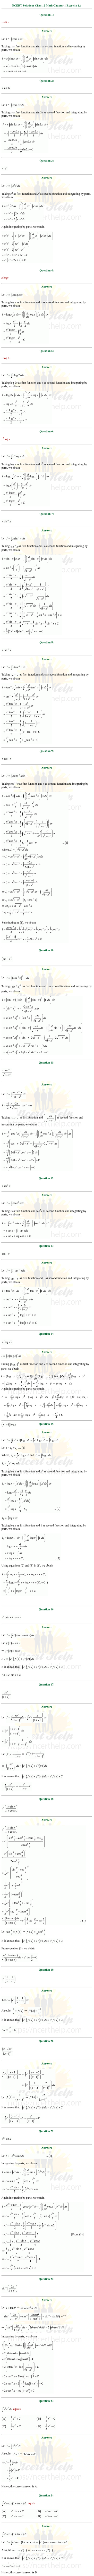 ex.7.6 Class 12 Math Chapter 7 ncert solutions